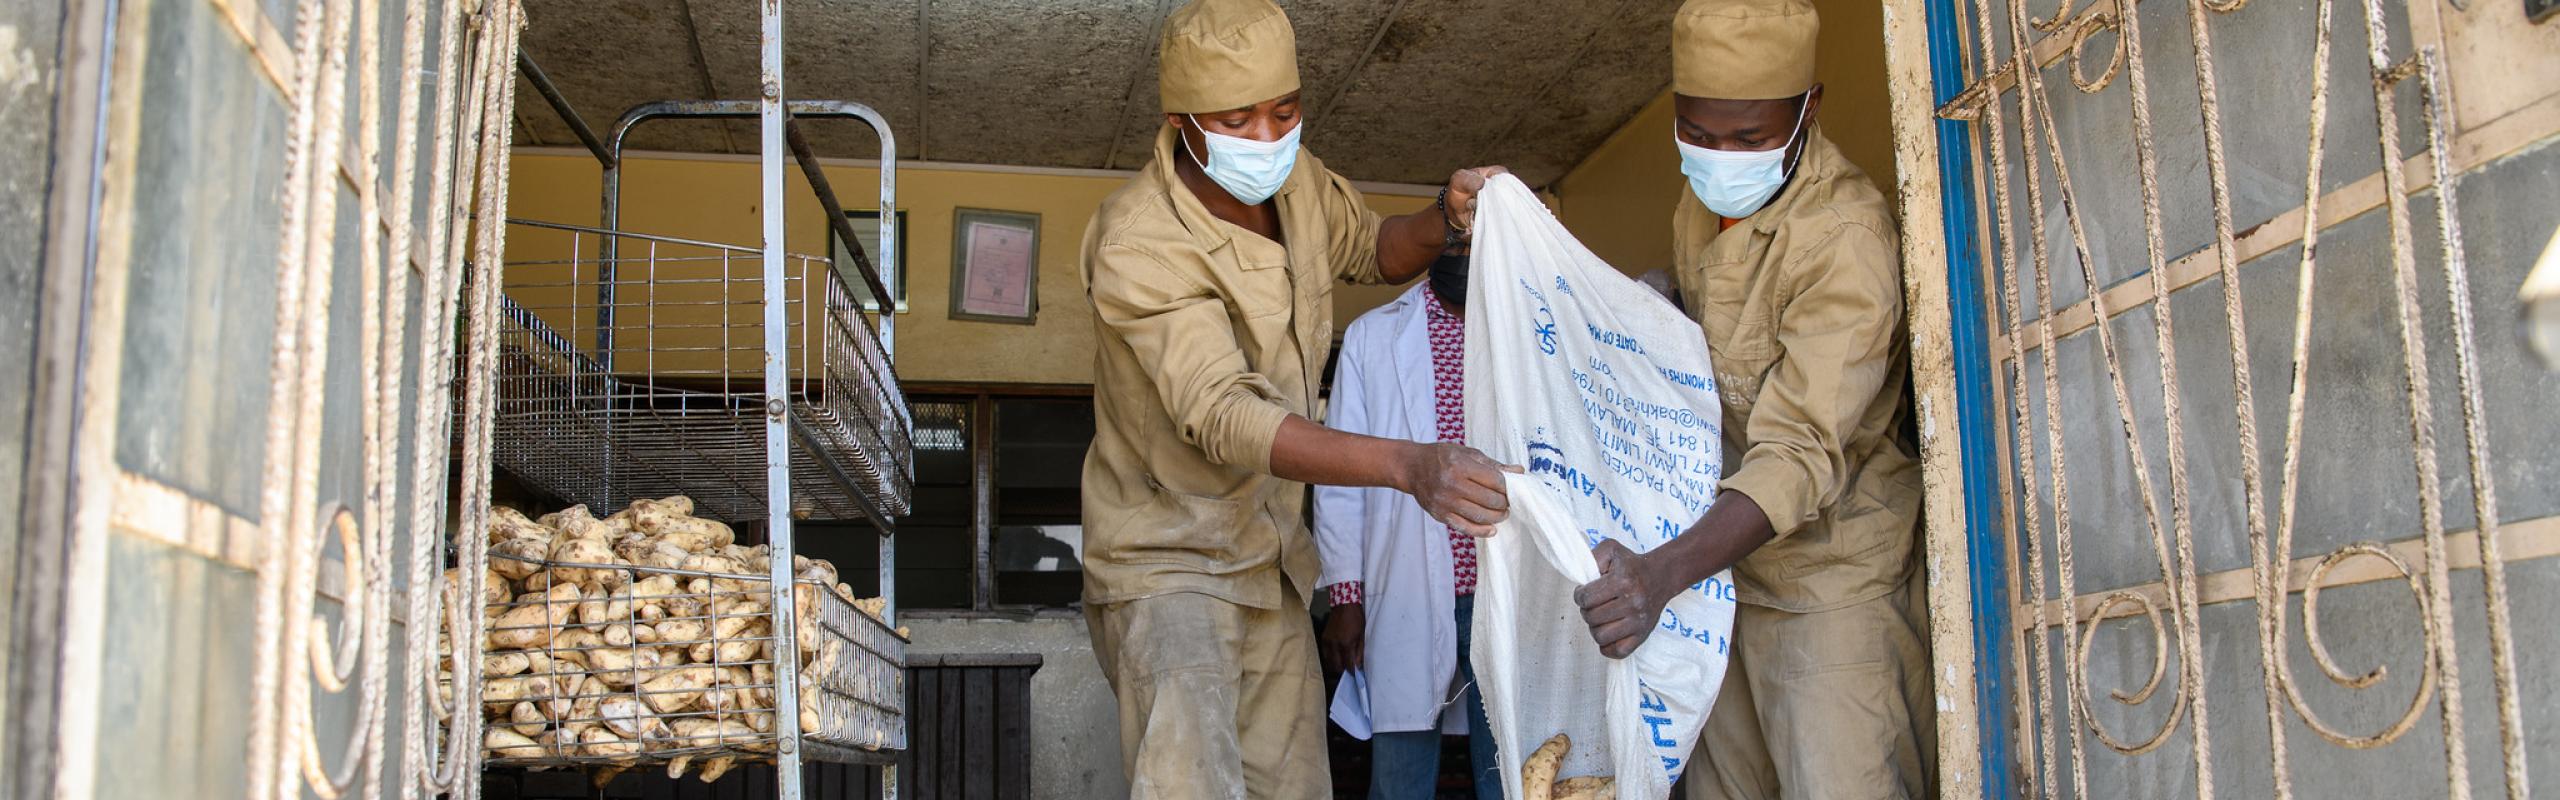  Deux employés d'Olympic Bakery au Malawi portent des masques lorsqu'ils versent des patates douces dans des sacs en tissu alors qu'ils préparent la purée de patates douces utilisée pour faire du pain aux patates douces.